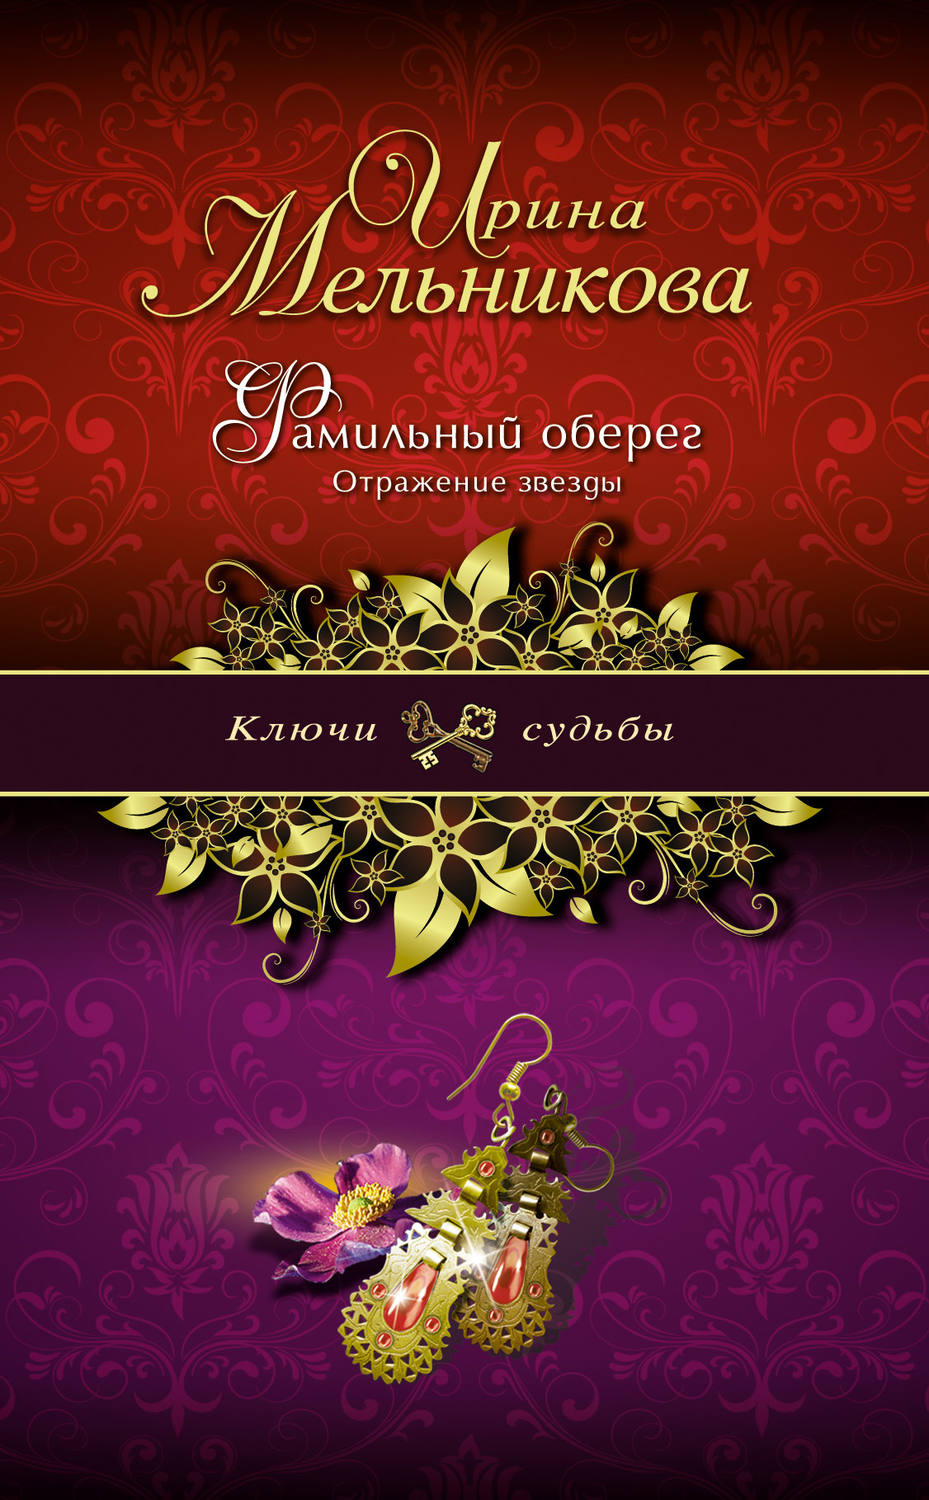 Ирина мельникова скачать все книги бесплатно fb2